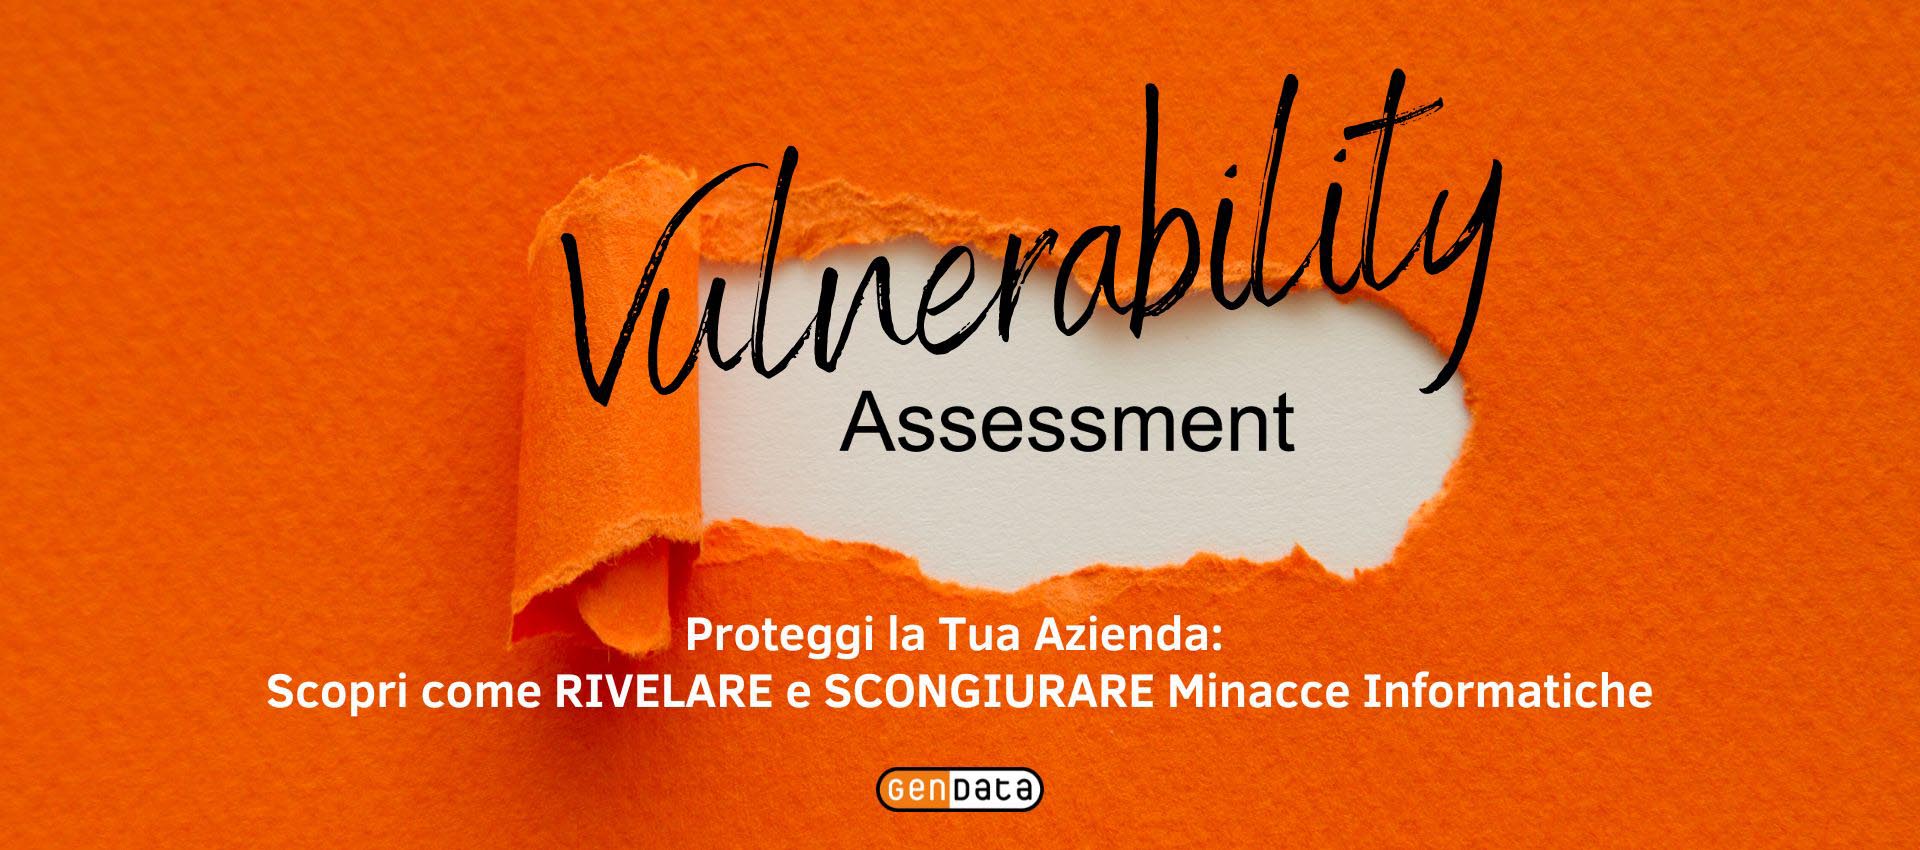 Proteggi la Tua Azienda: Scopri come il Vulnerability Assessment può Rivelare e Scongiurare Minacce Informatiche